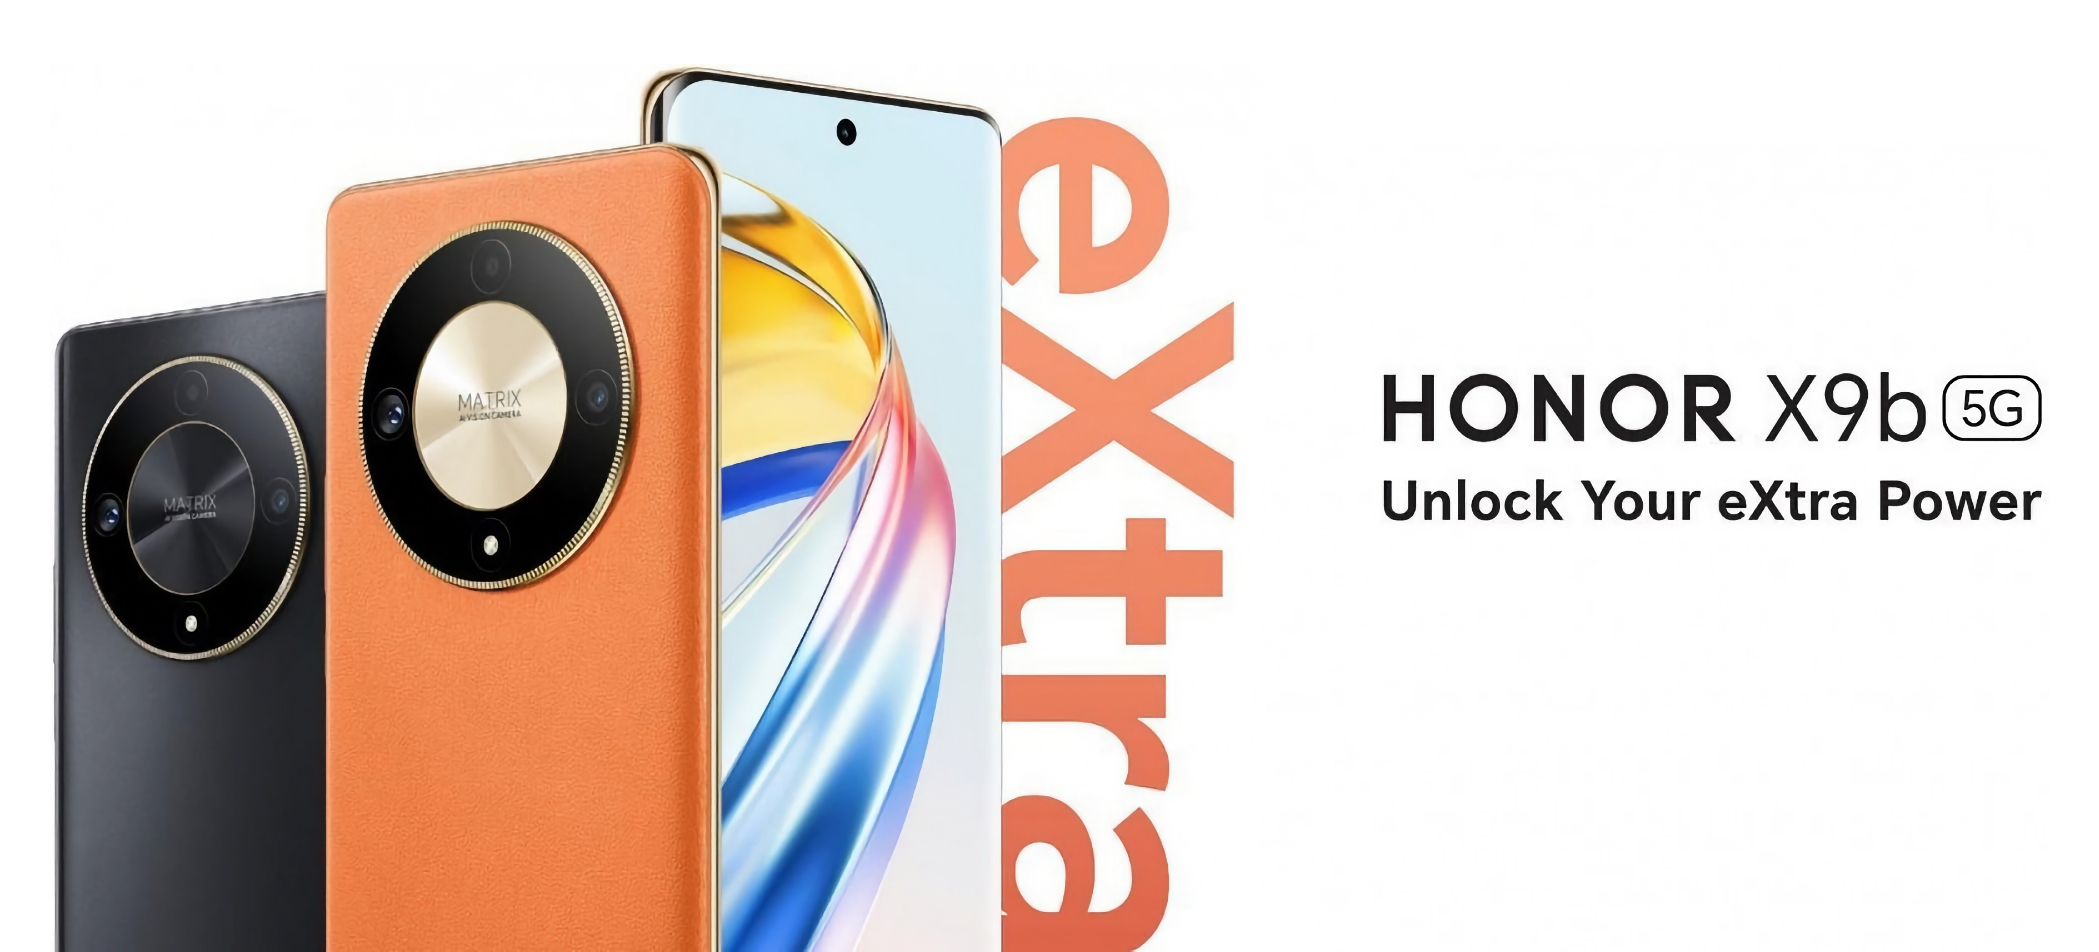 Honor X9b vorgestellt: Smartphone mit 120Hz AMOLED-Bildschirm, Snapdragon 6 Gen 1 Chip, 108 MP Kamera und IP53 Schutz für 275$